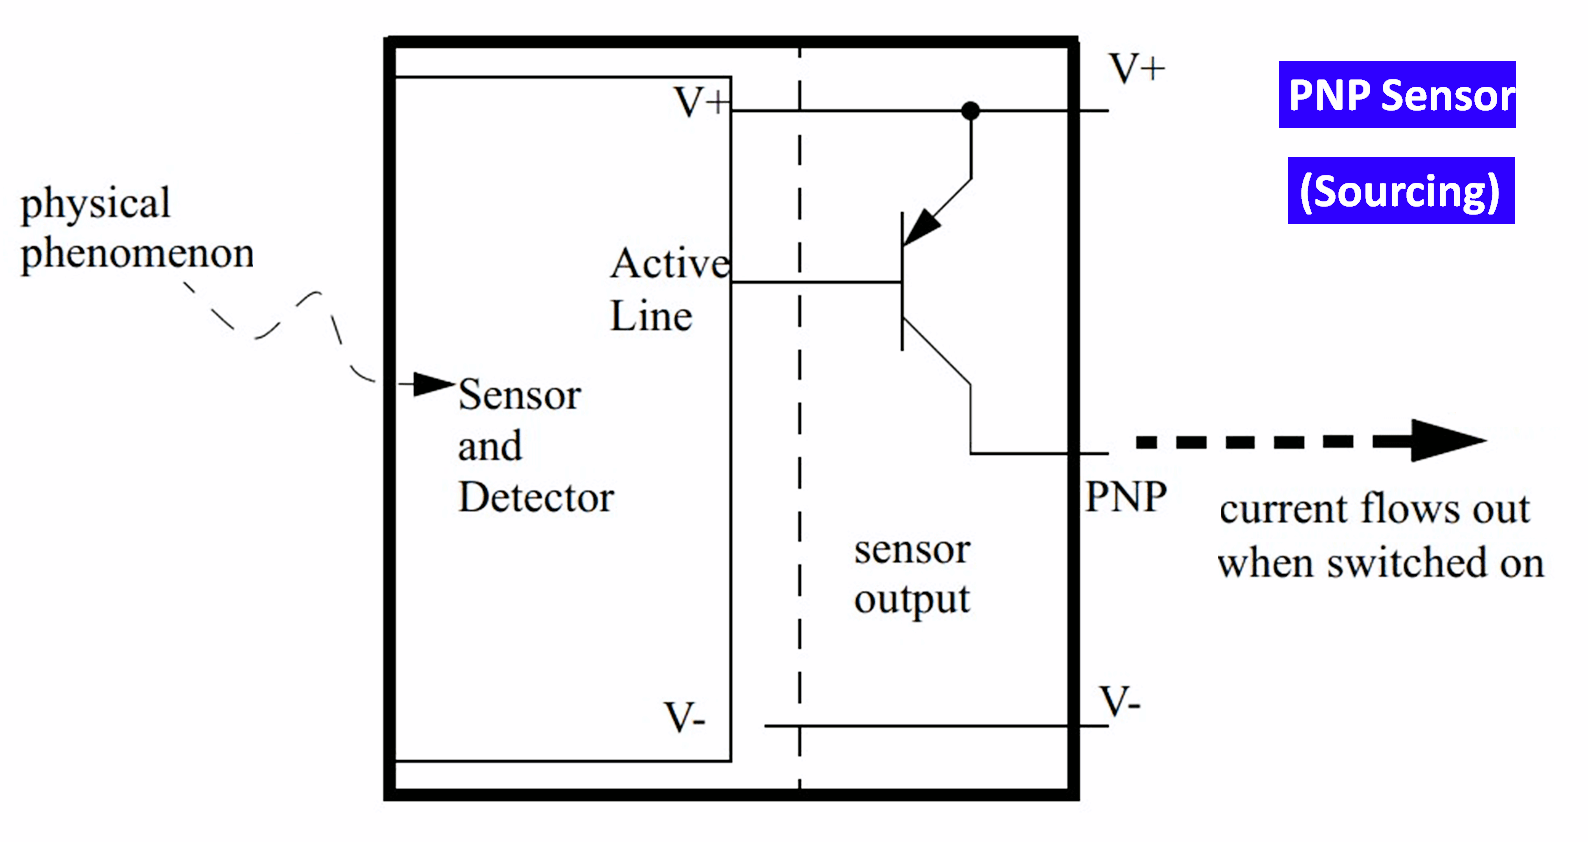 PNP Sensor (Sourcing)